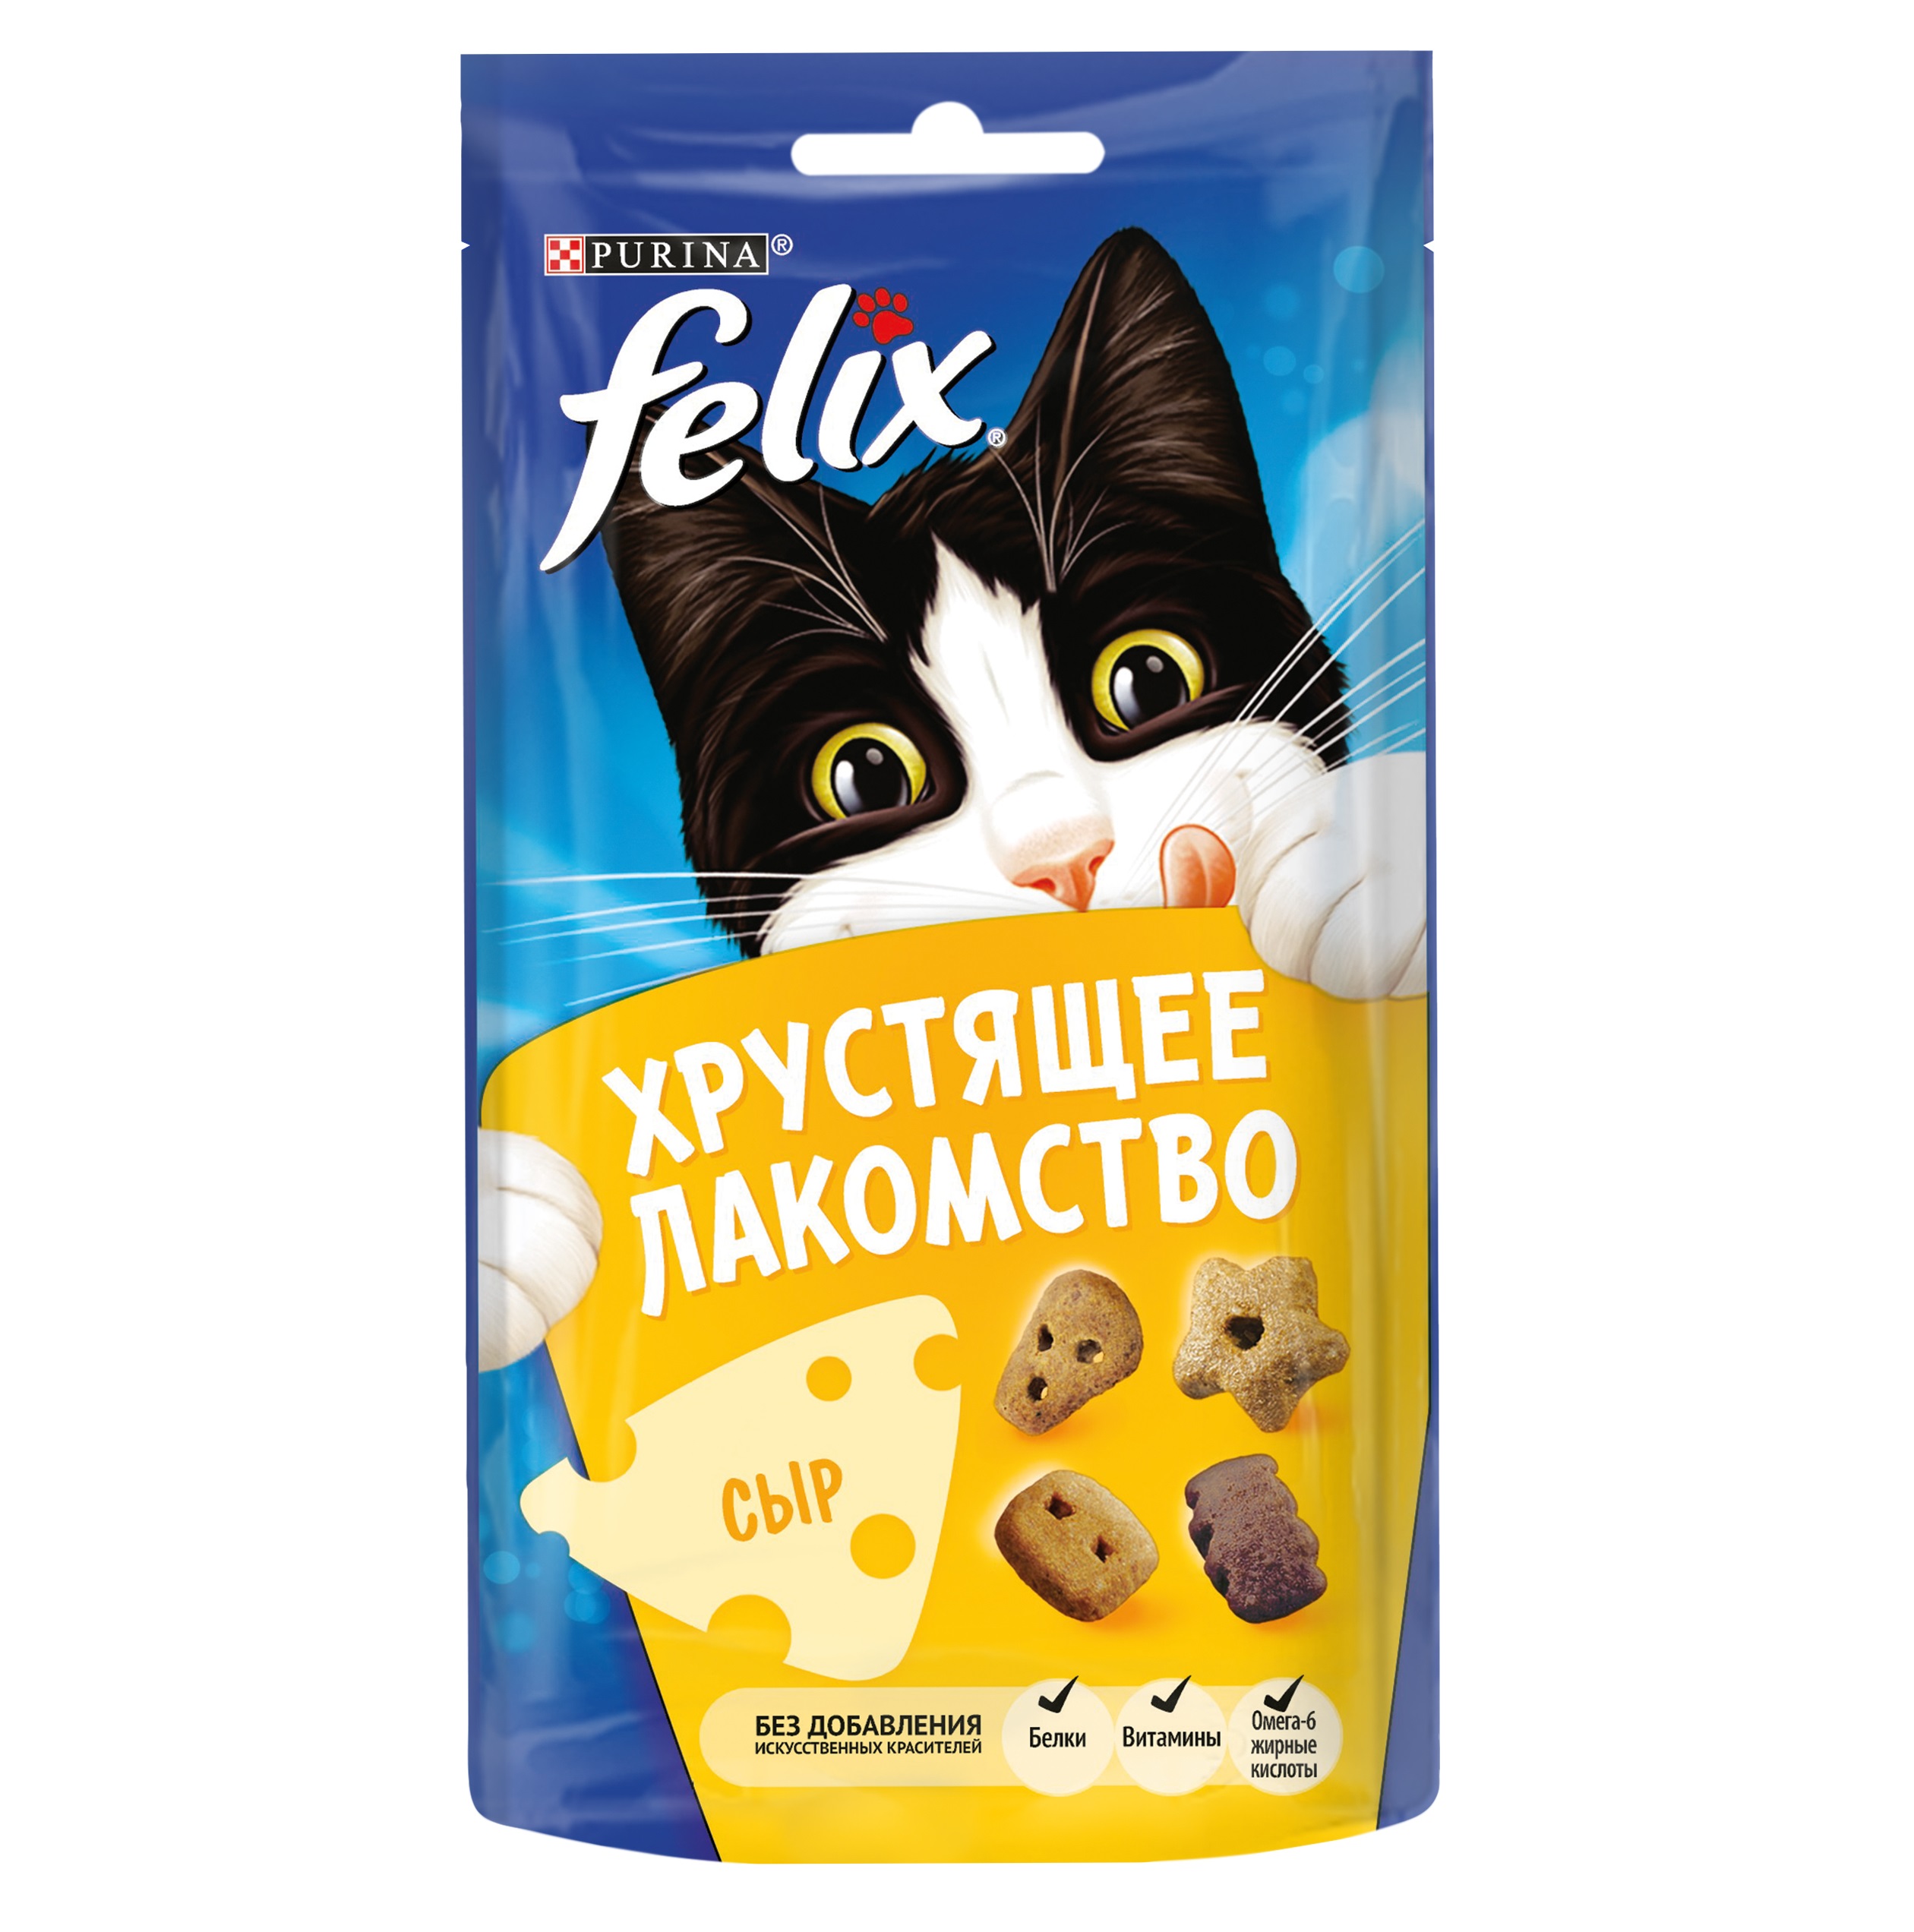 Феликс 60гр Сыр, хрустящее лакомство (Felix)